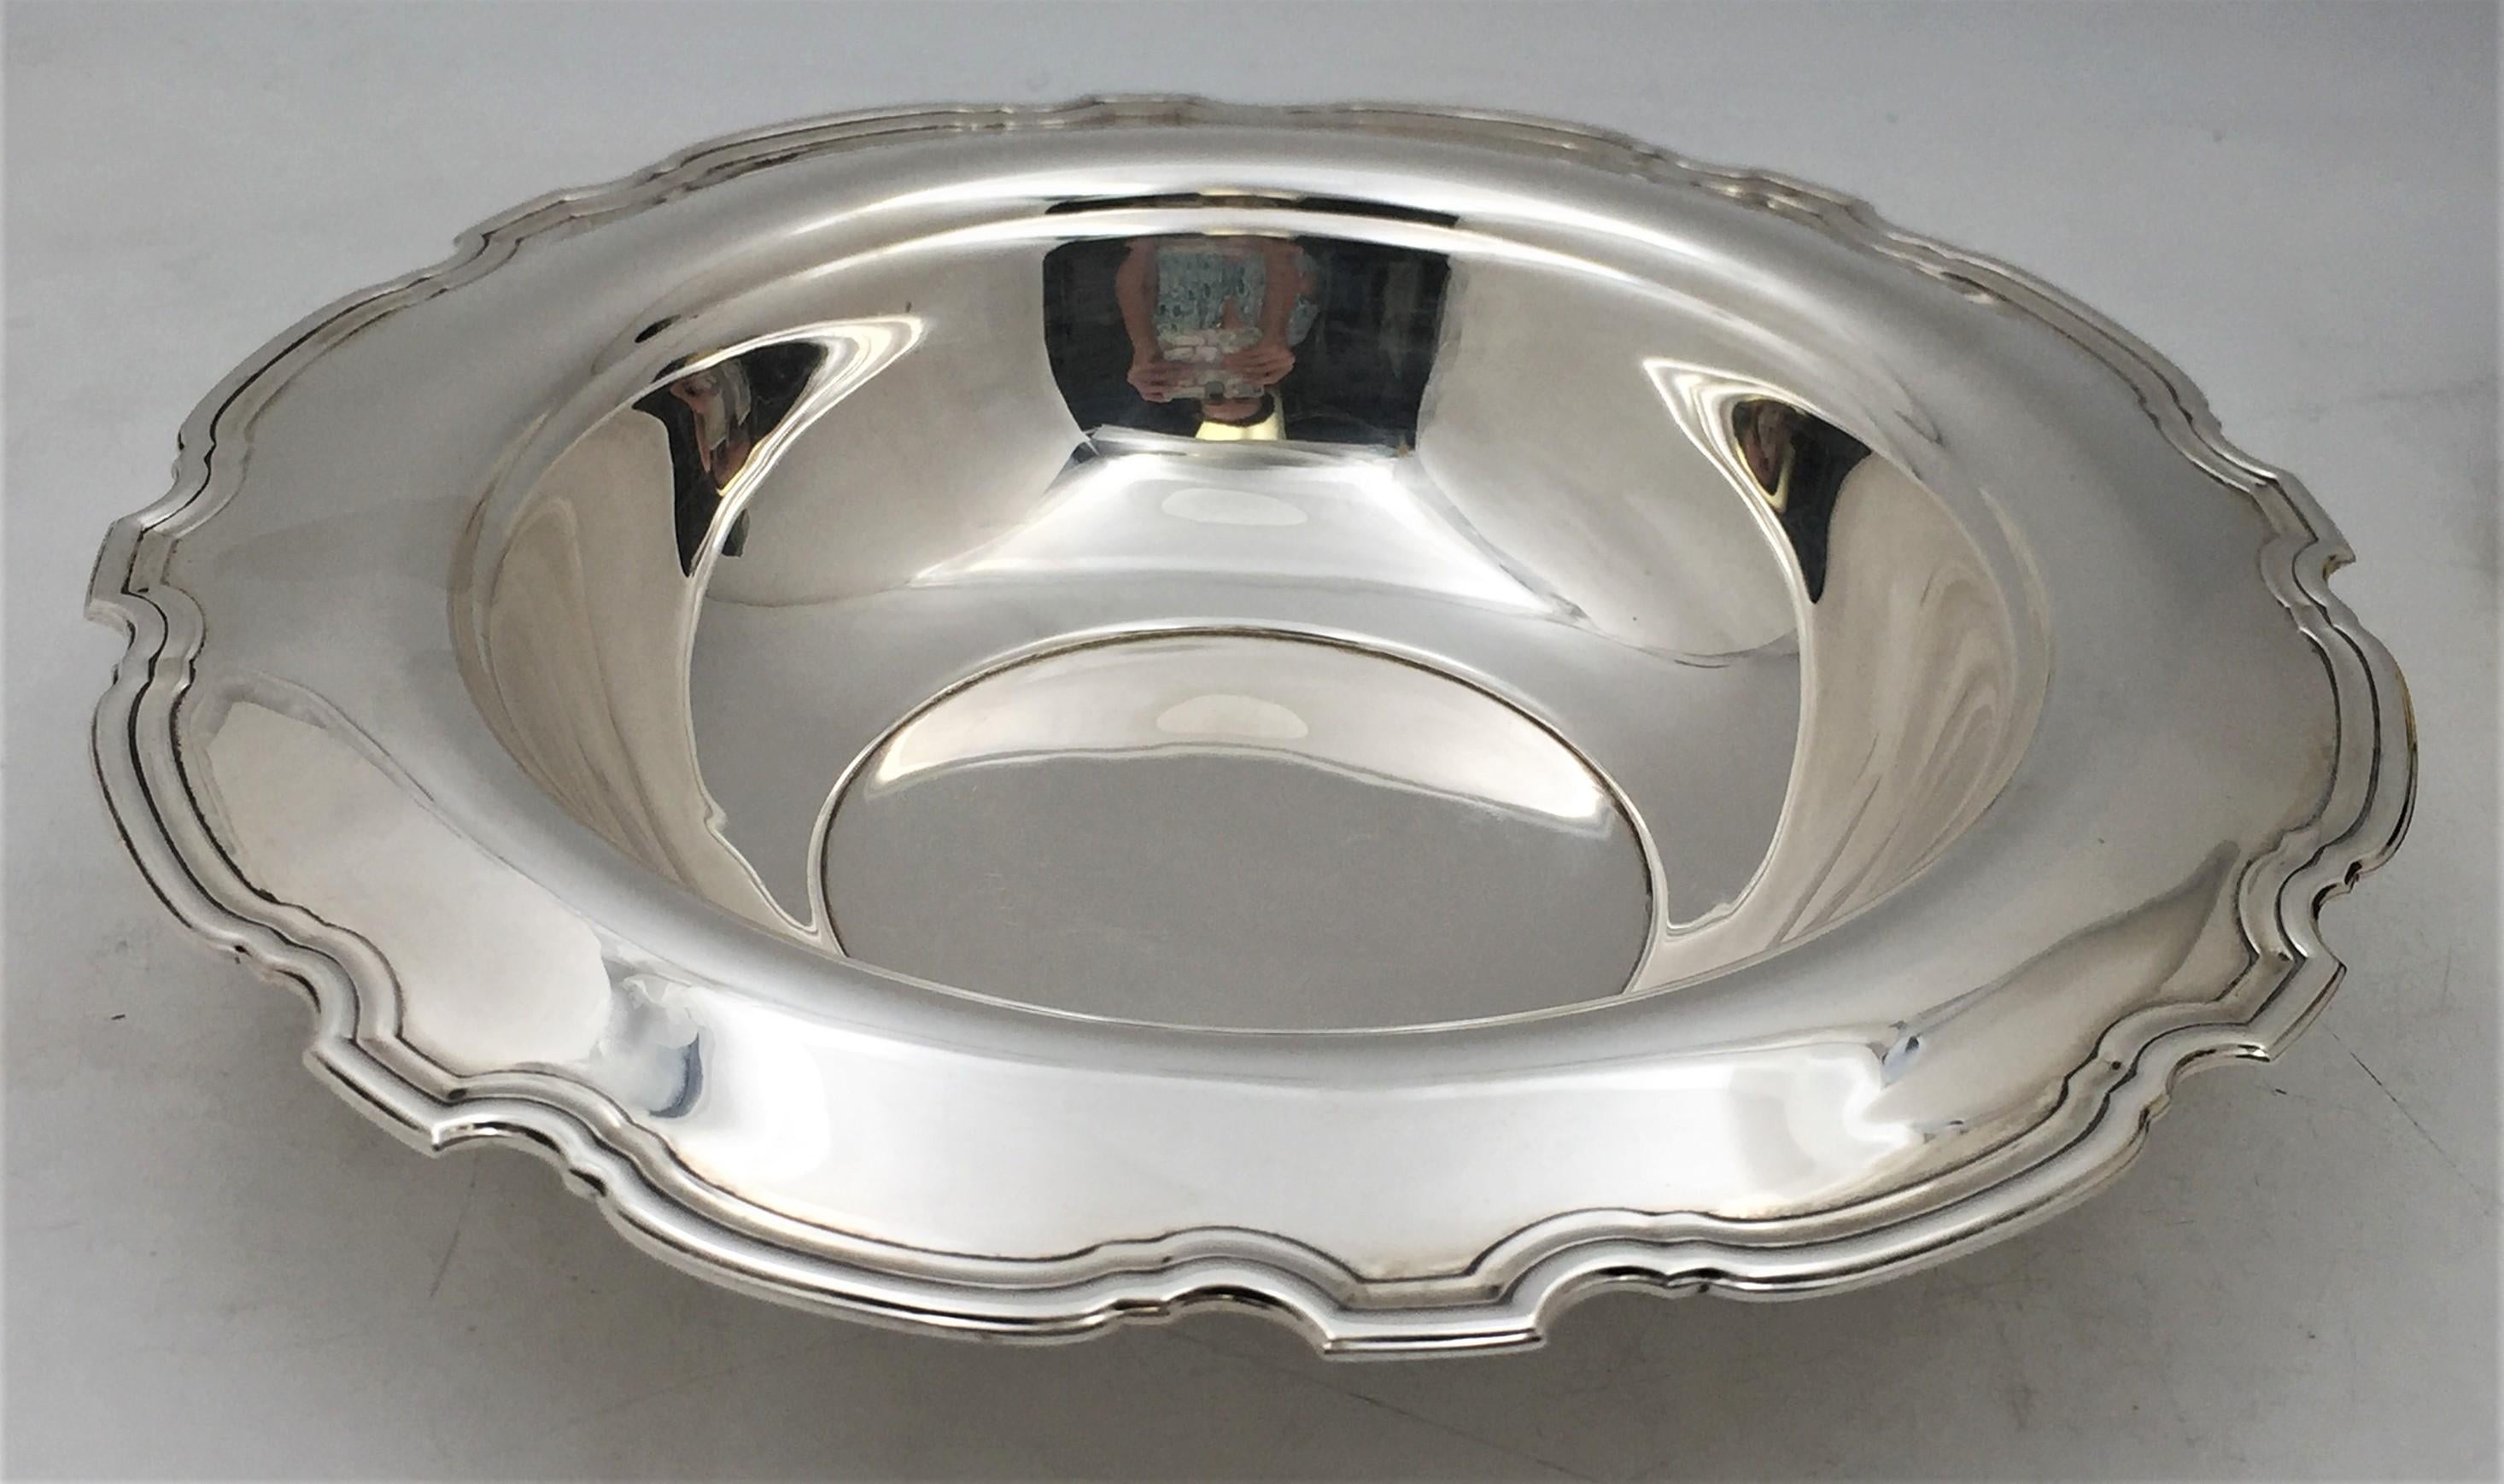 Grand bol de centre de table en argent sterling dans le motif Hampton, fabriqué par Tiffany & Co. en 1925. Le diamètre est de 12